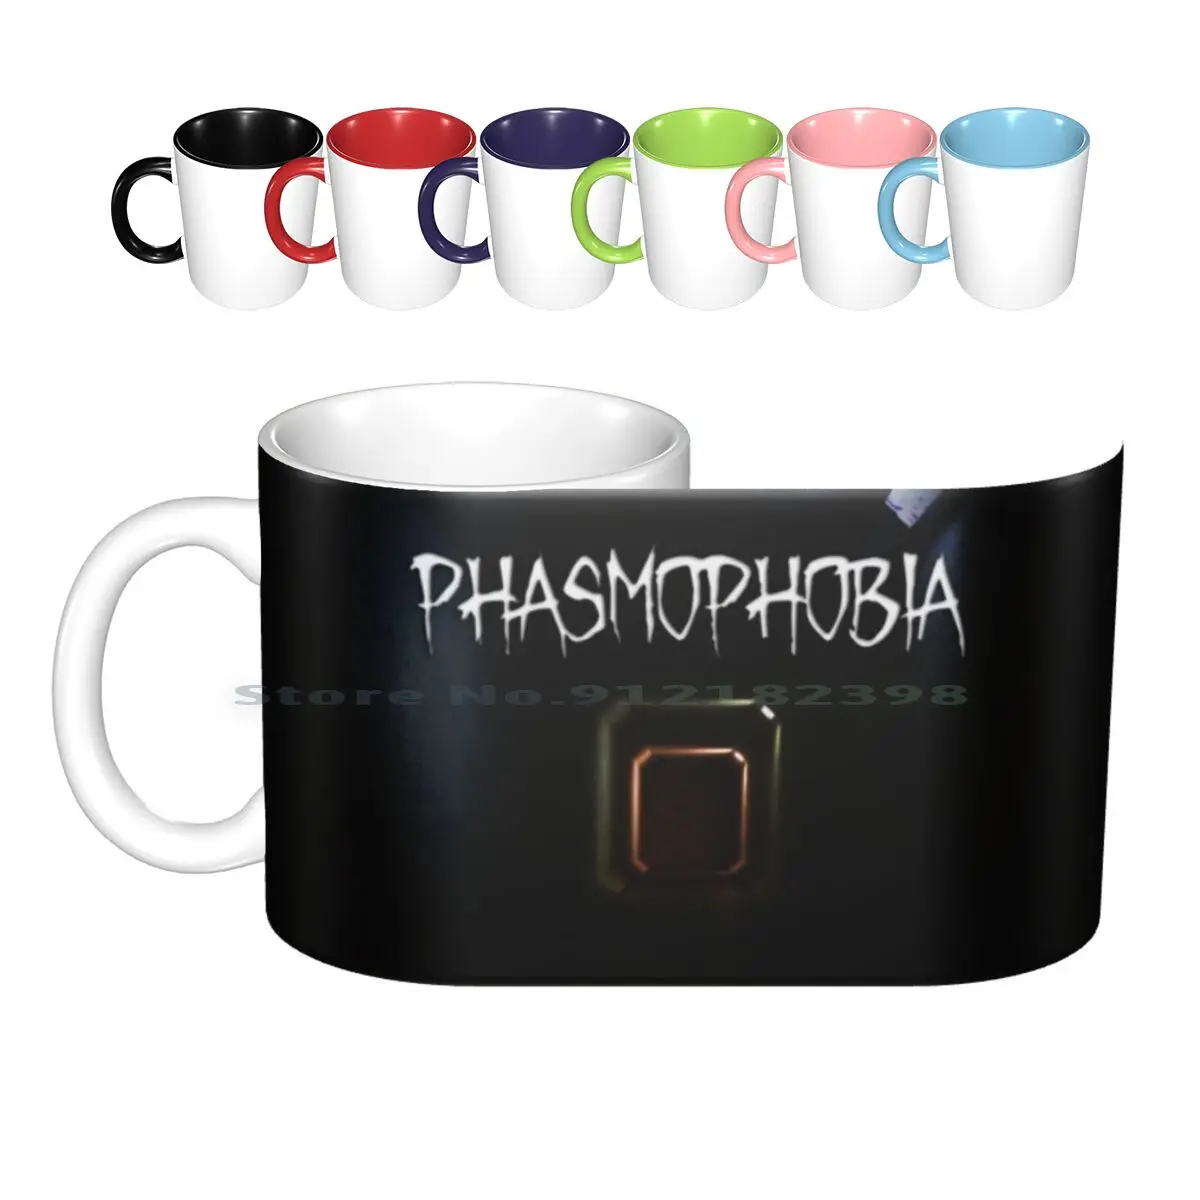 Phasmophobia music box купить фото 74